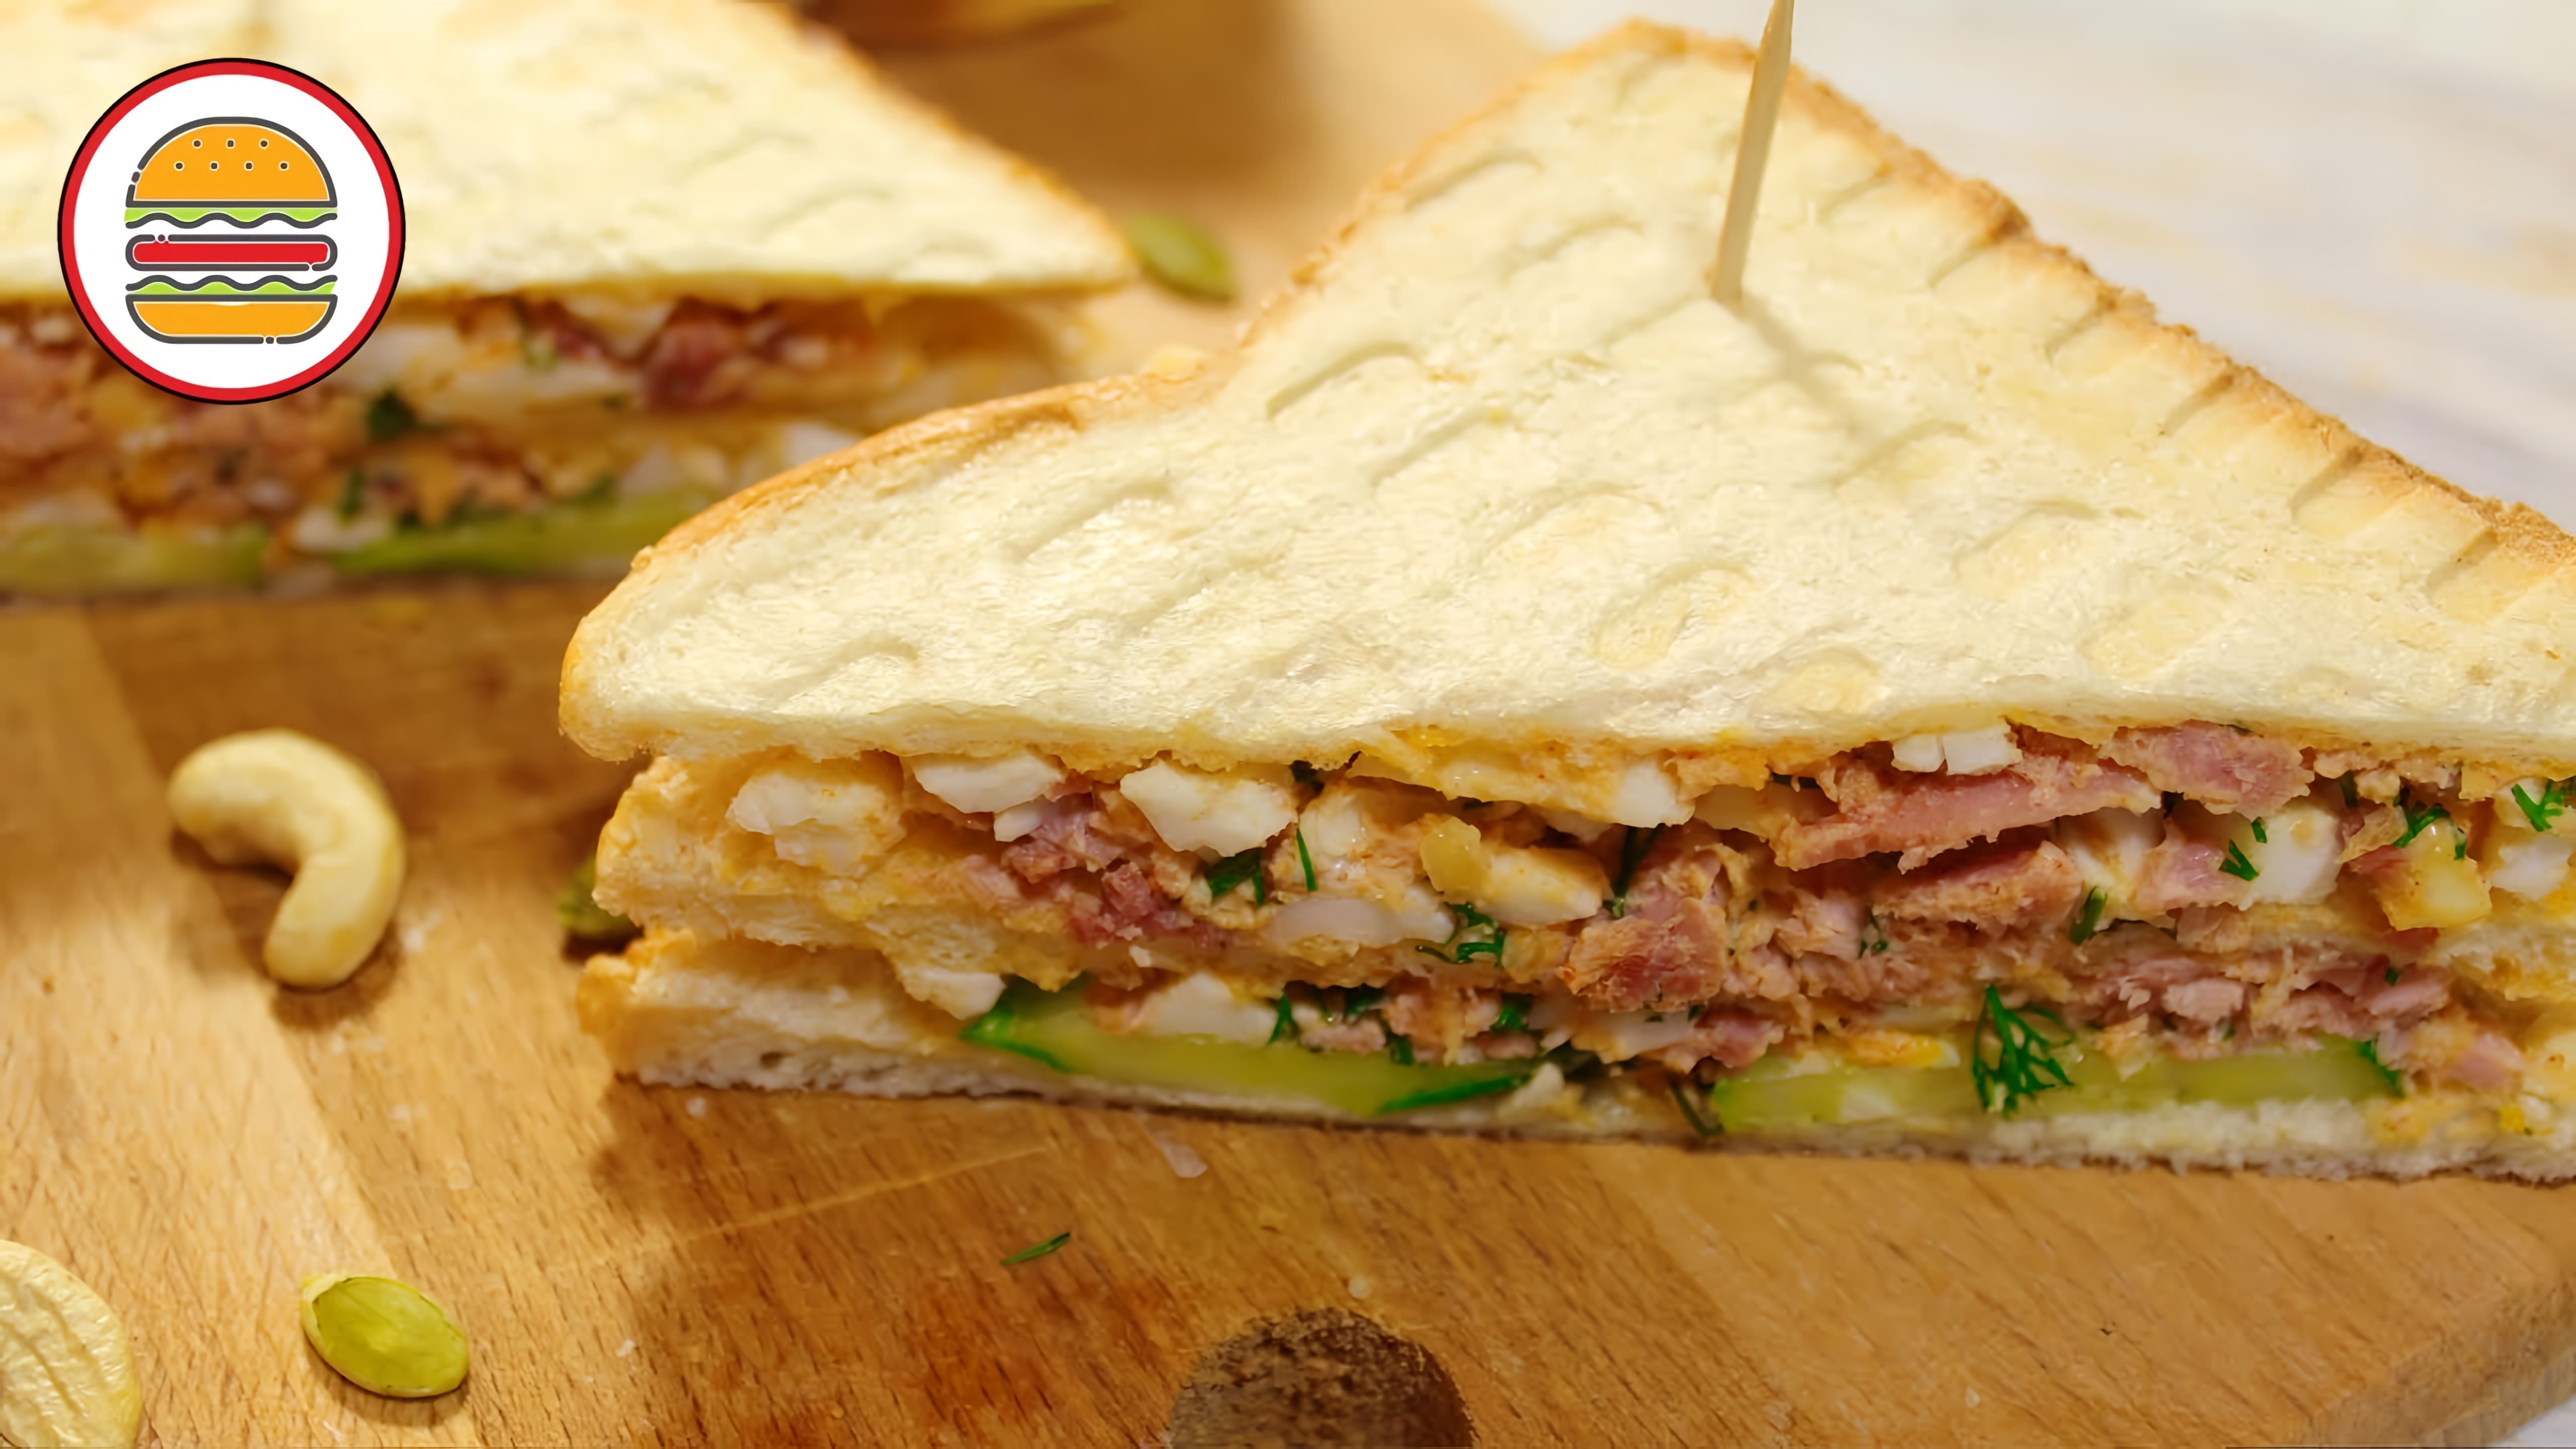 Клаб-сэндвич с тунцом - это вкусный бутерброд, который состоит из двух ломтиков белого хлеба, на которых расположены кусочки тунца, яйца и орешки